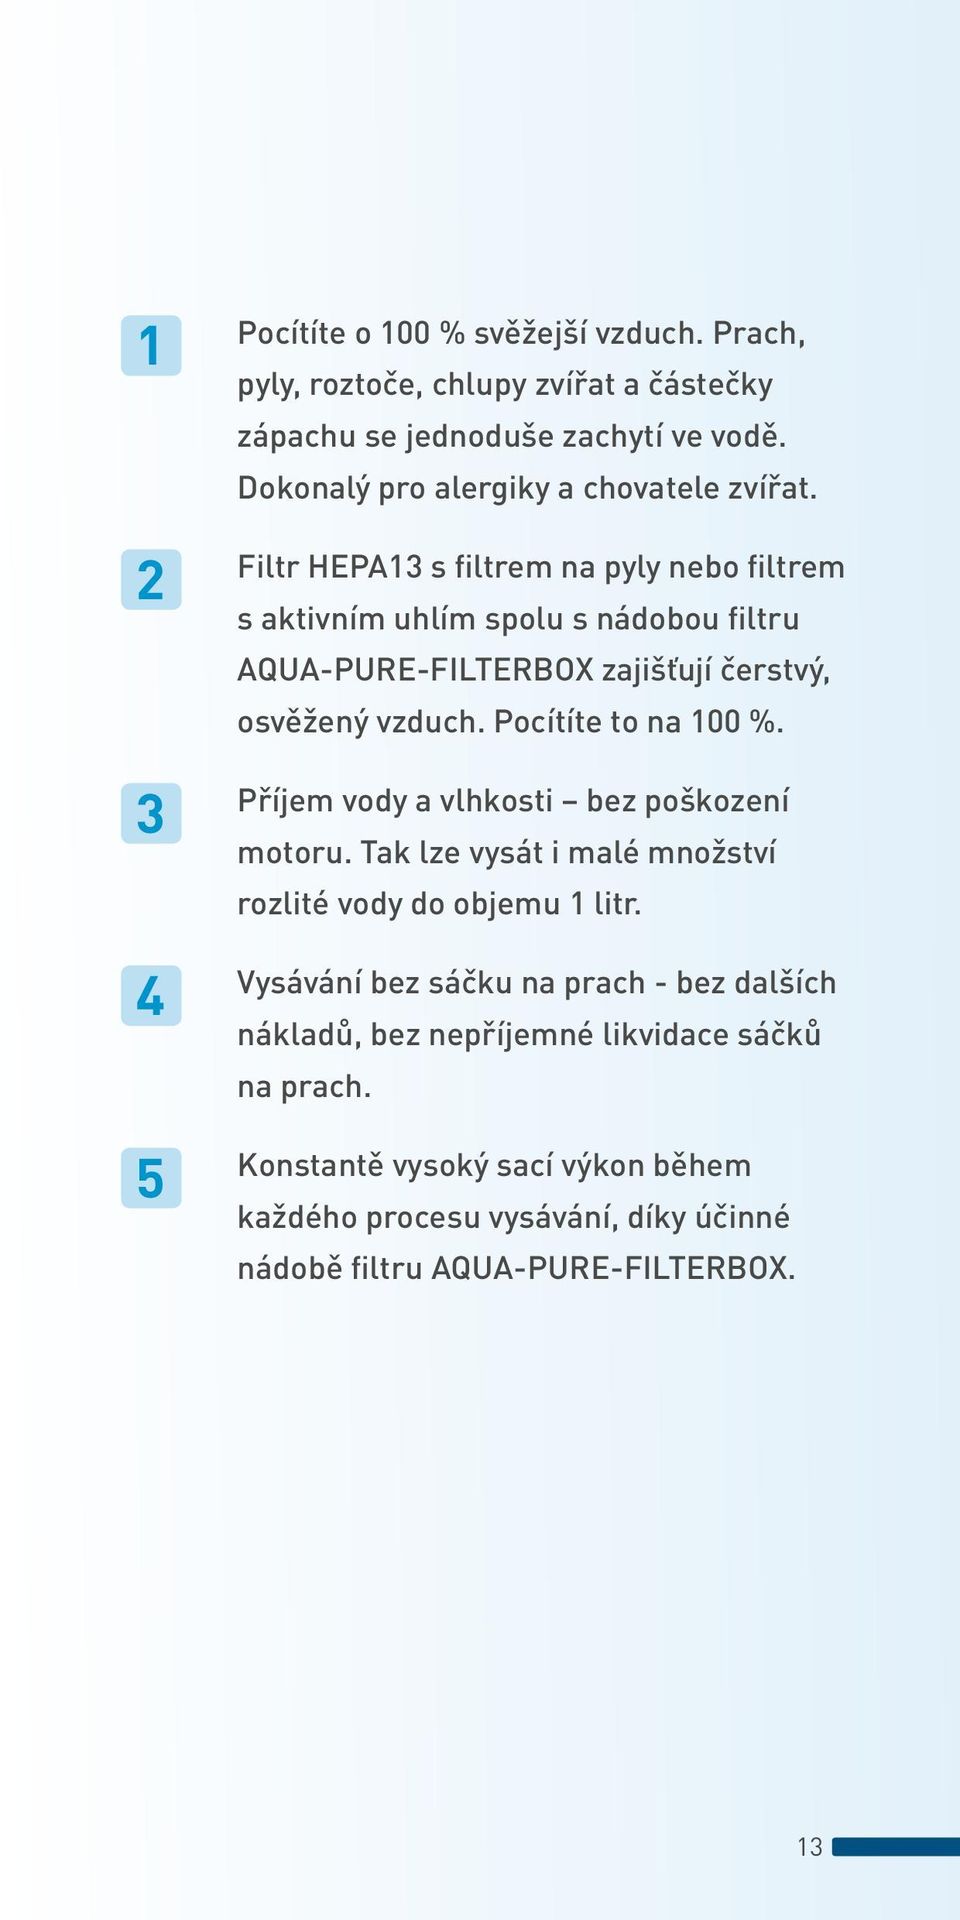 Filtr HEPA13 s filtrem na pyly nebo filtrem s aktivním uhlím spolu s nádobou filtru AQUA-PURE-FILTERBOX zajišťují čerstvý, osvěžený vzduch.